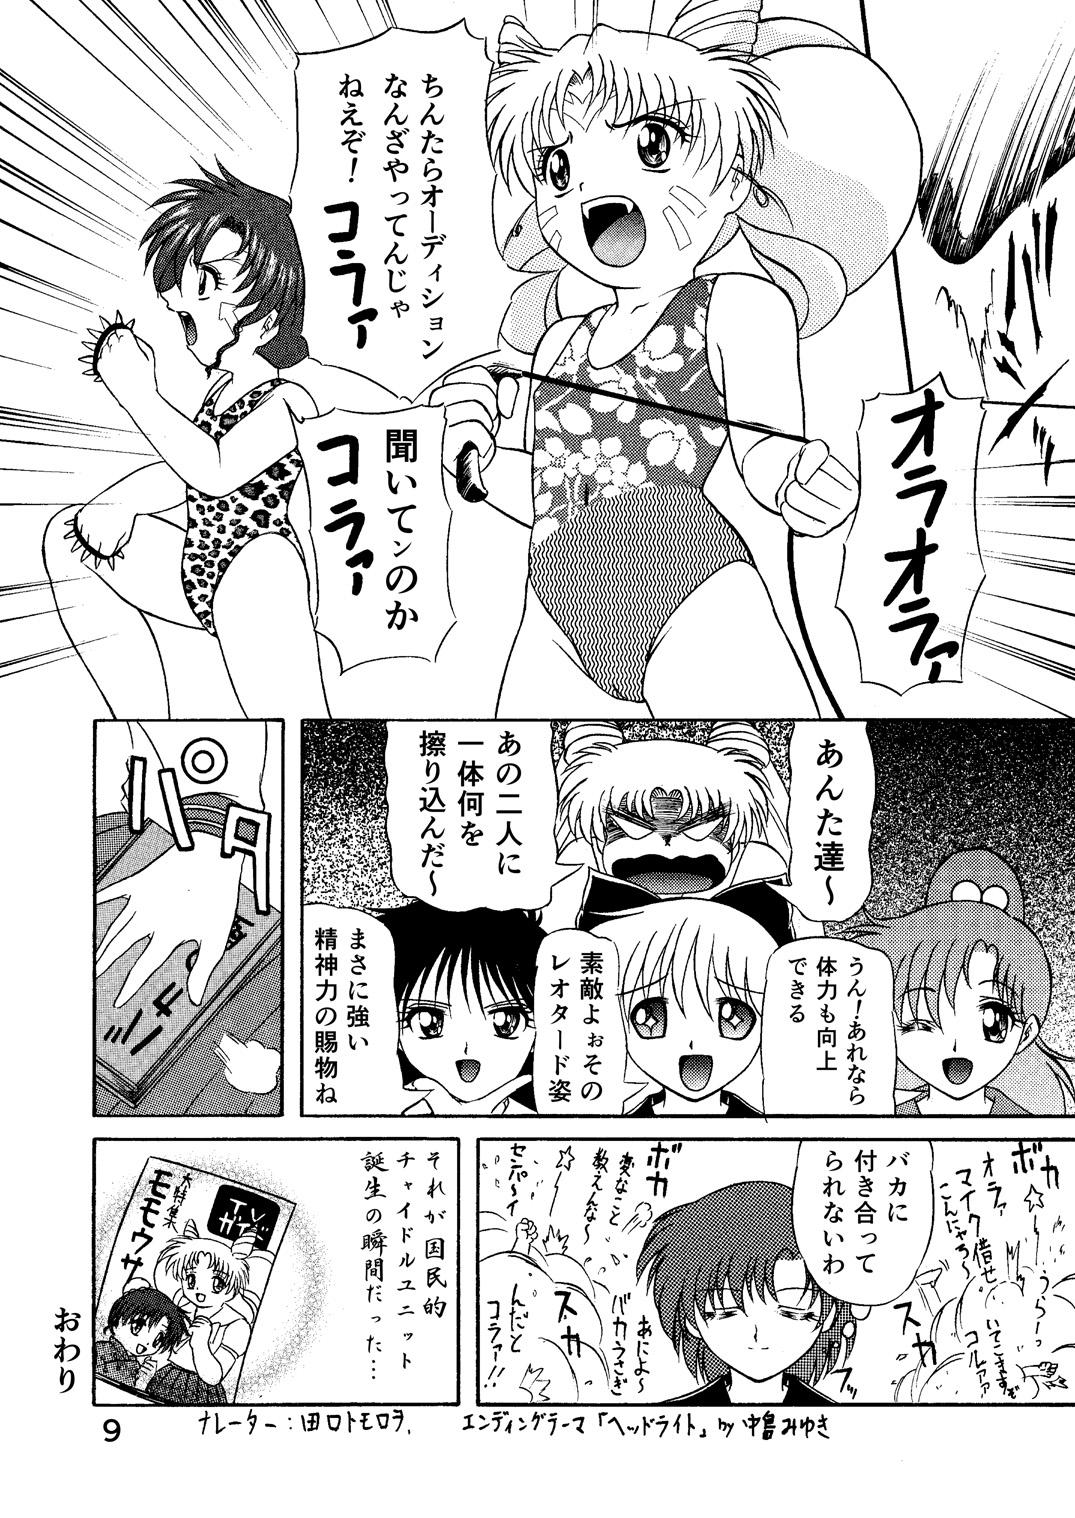 Foot Worship PINK SUGAR 20th Anniversary Special - Sailor moon | bishoujo senshi sailor moon Gay Military - Page 9